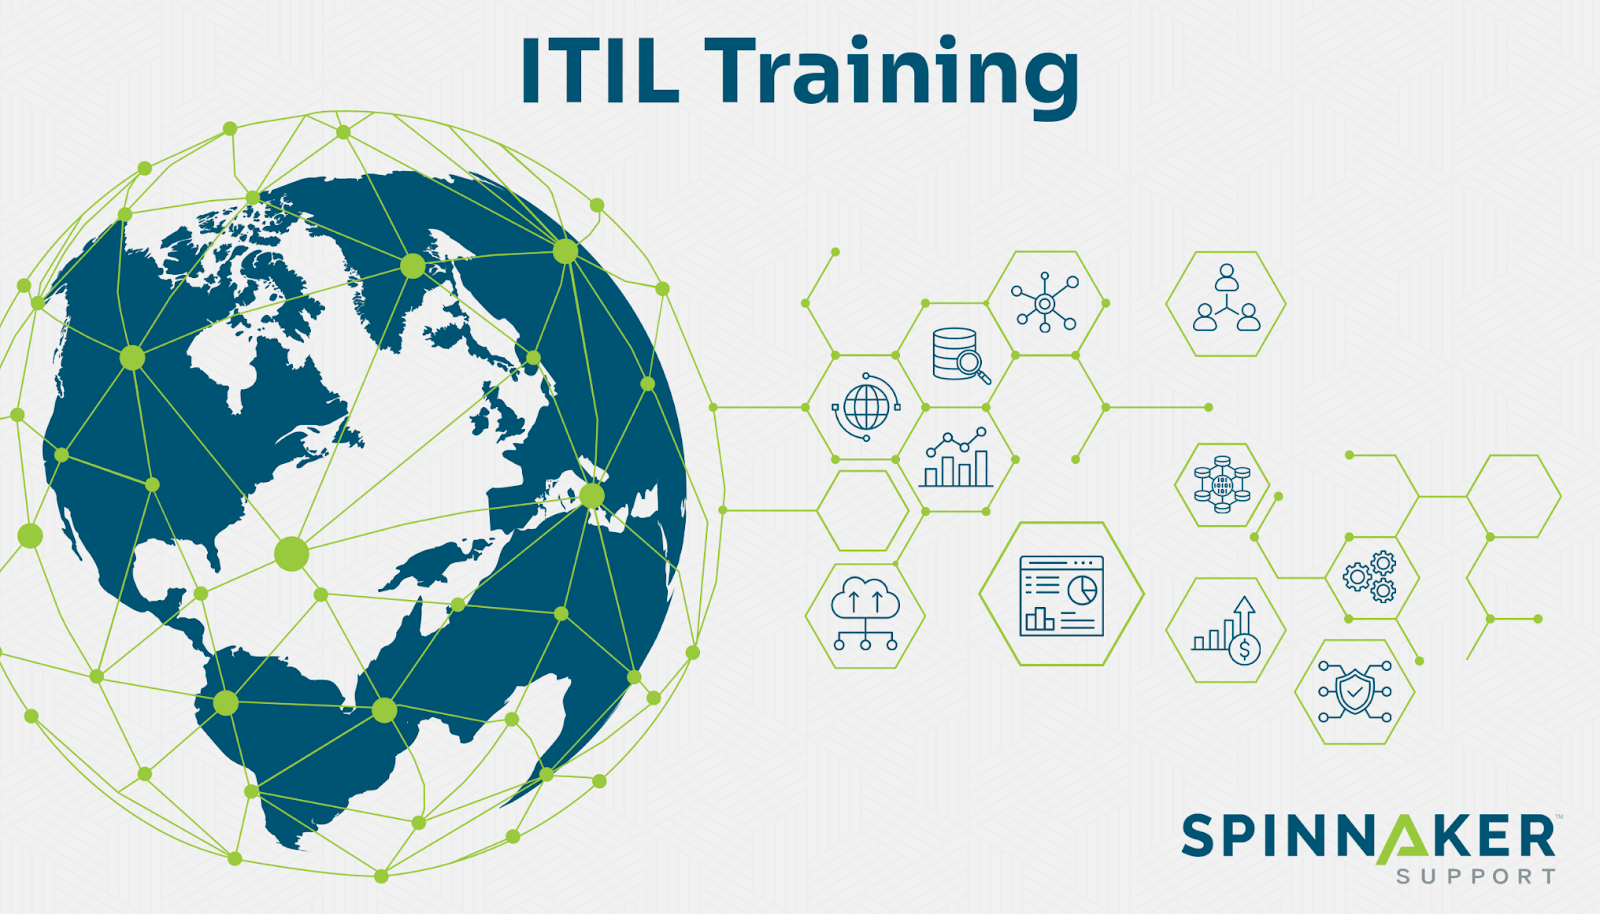 ITIL training explained